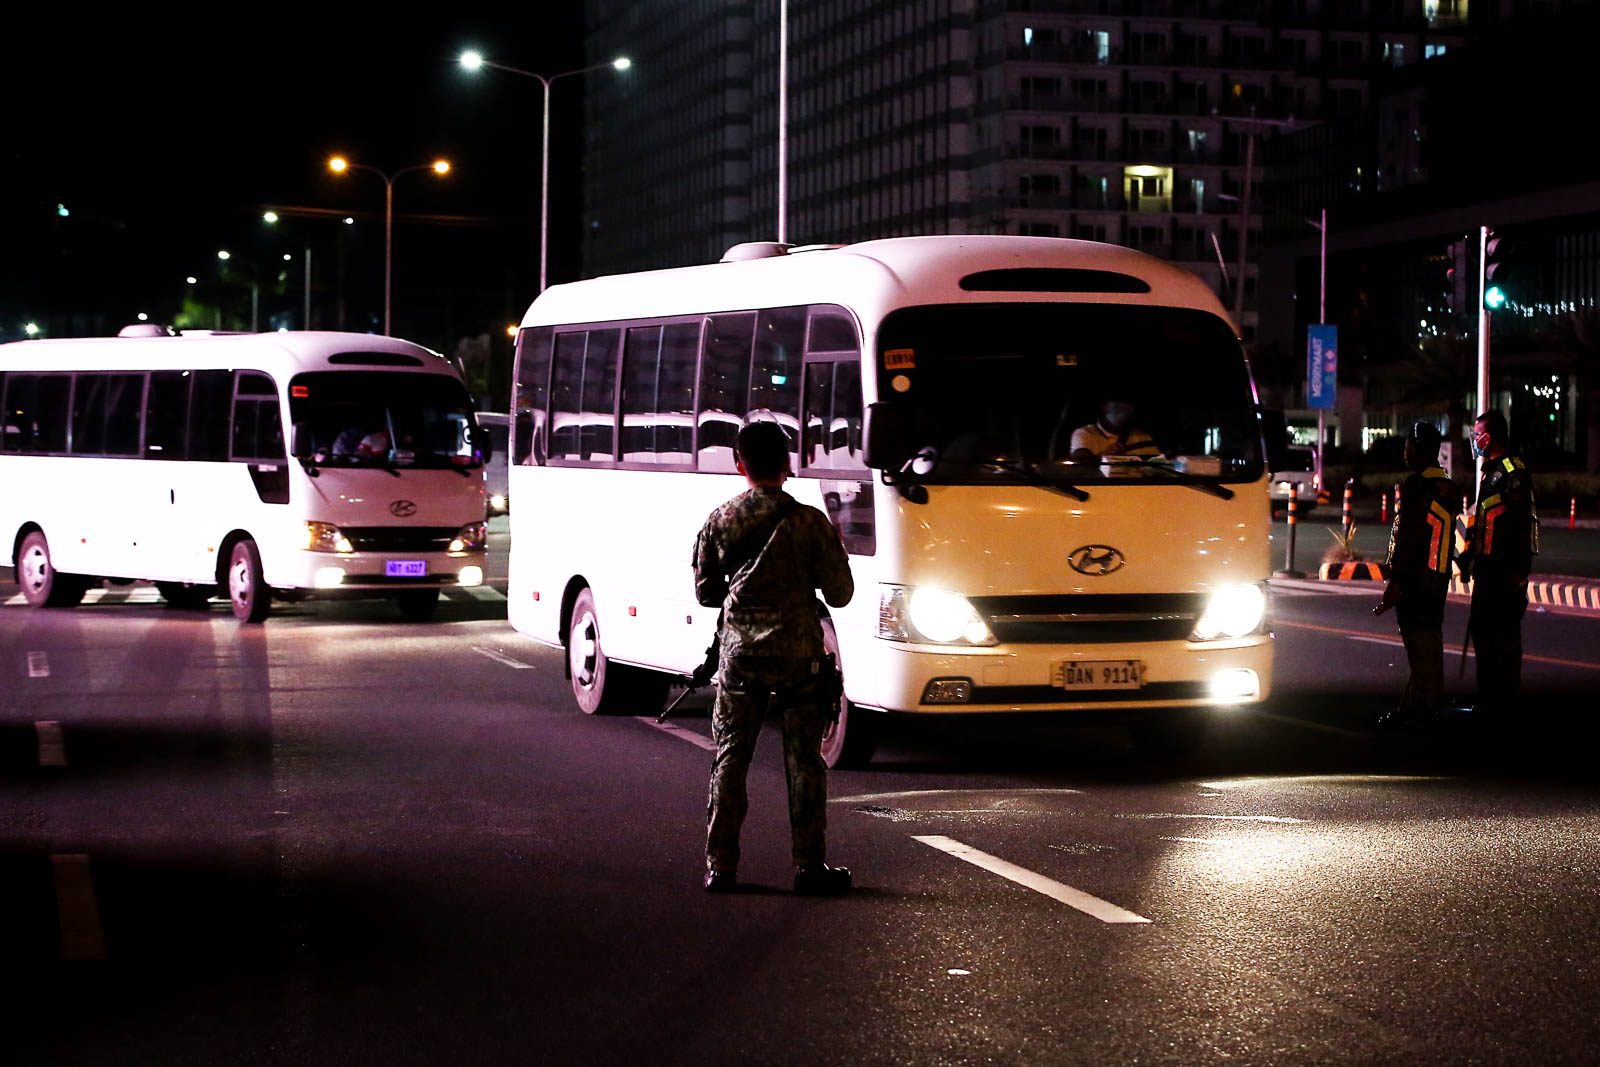 Curfew in Metro Manila will be midnight till 4 am starting June 15